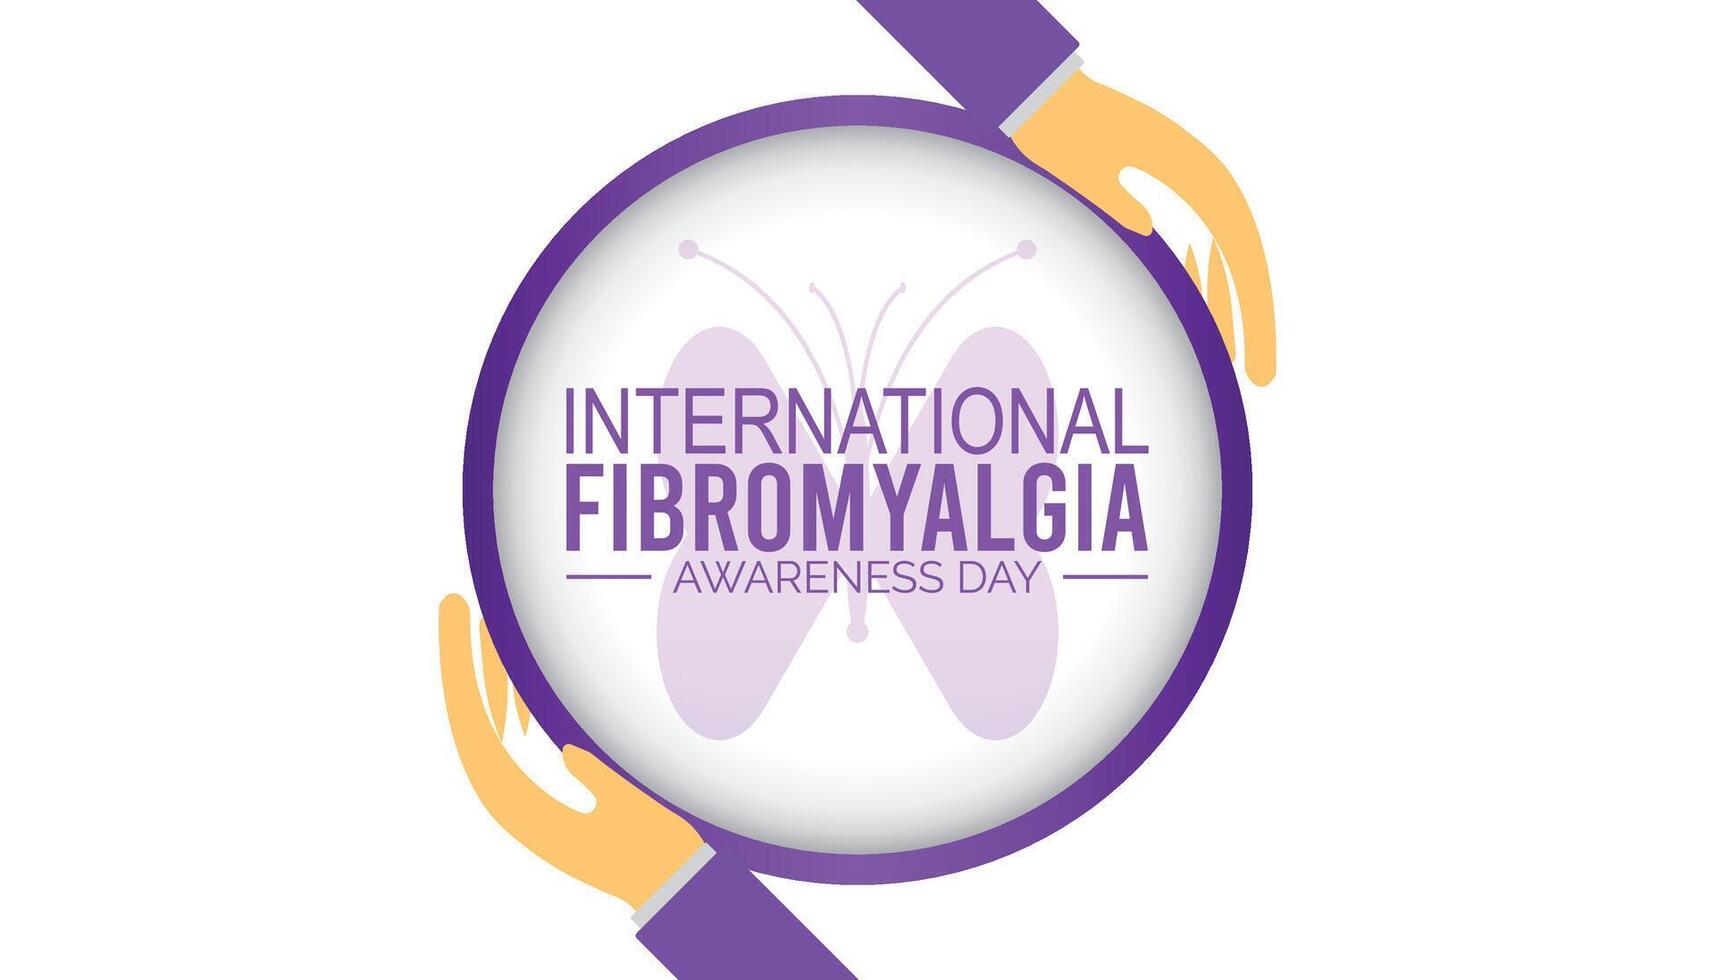 fibromyalgie Internationale bewustzijn dag opgemerkt elke jaar in kunnen. sjabloon voor achtergrond, banier, kaart, poster met tekst inscriptie. vector